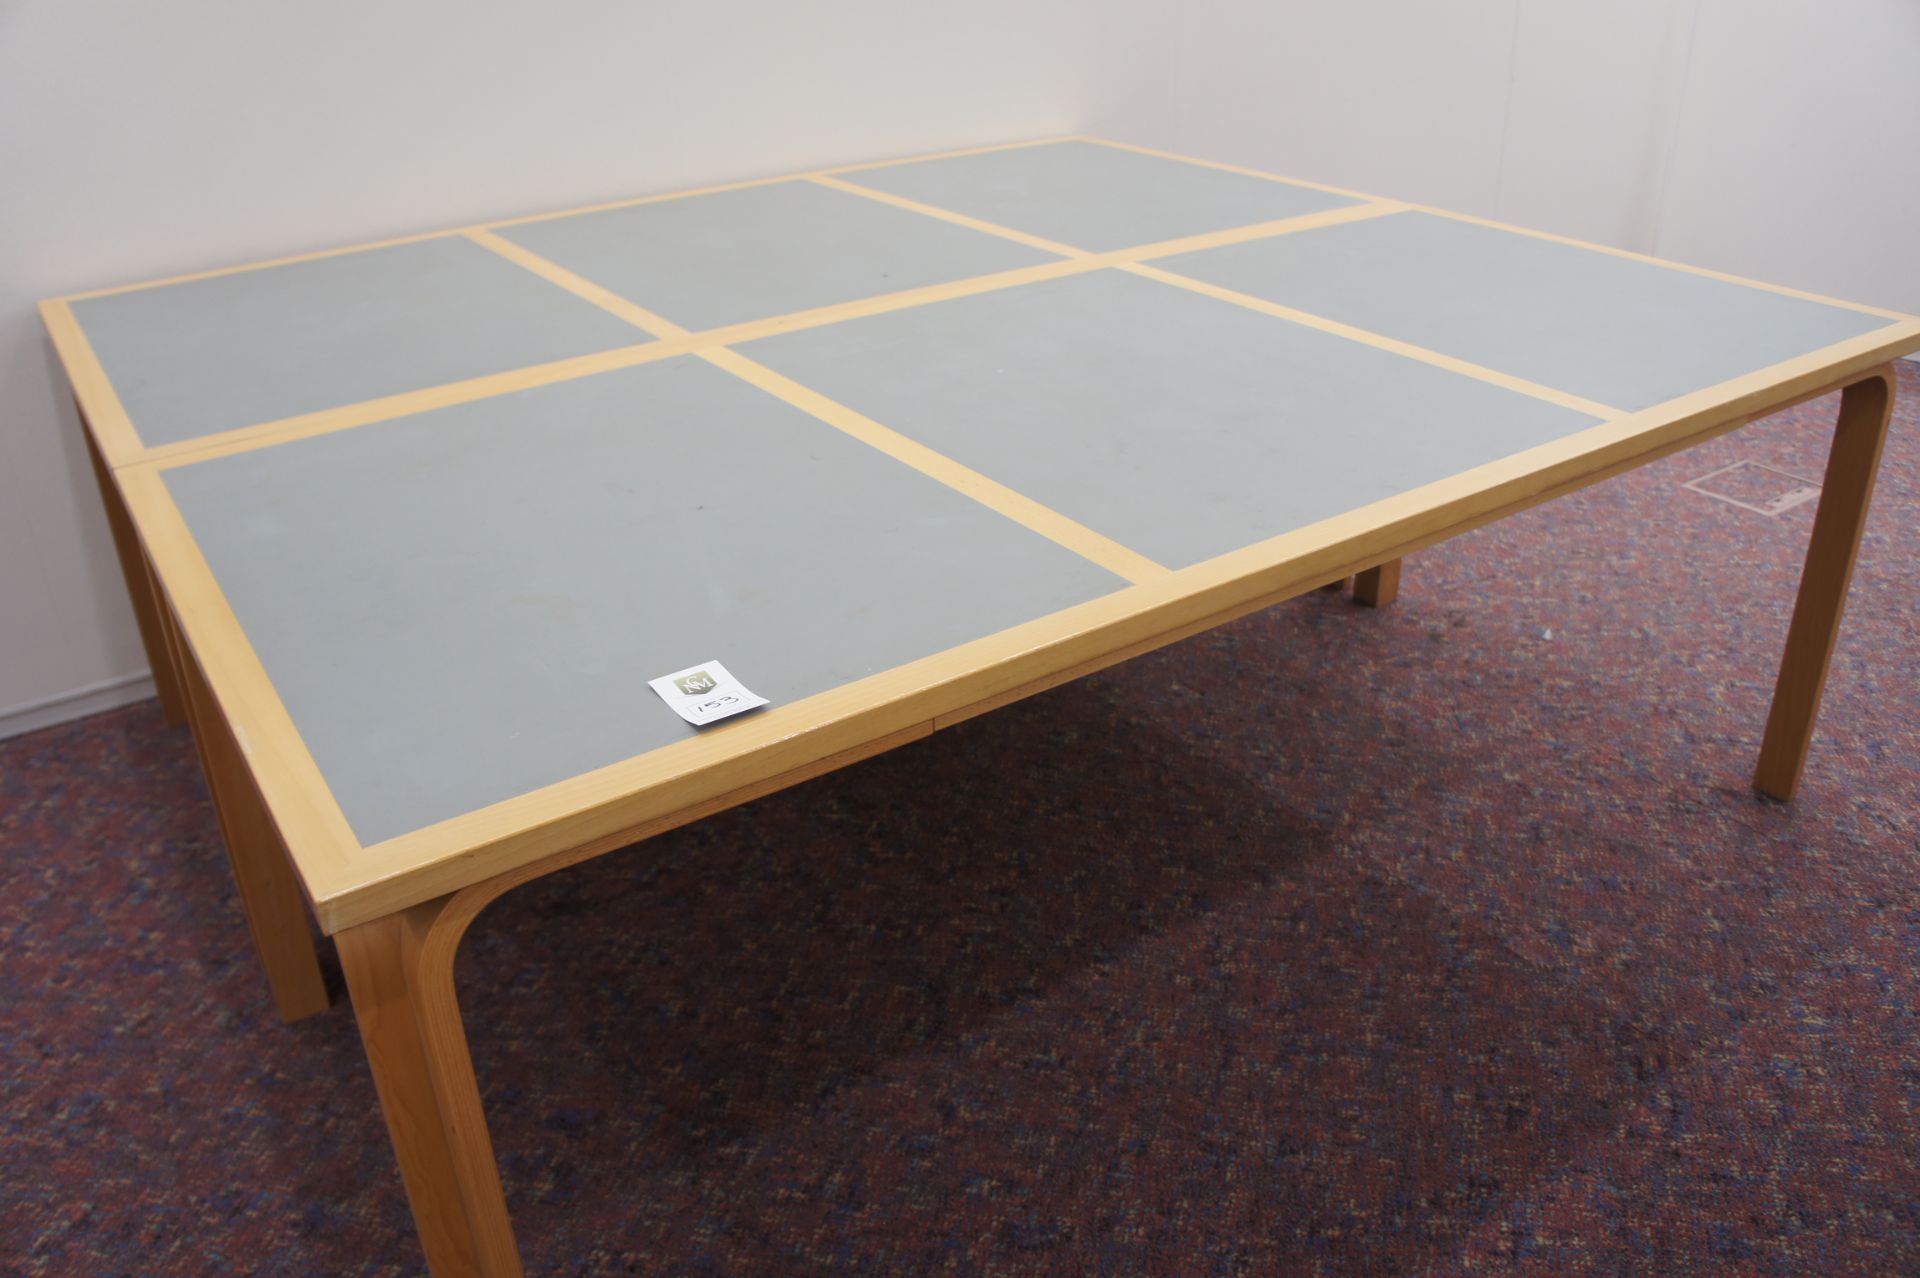 2 piece Magnus Olesen table 2020mm x 900mm each